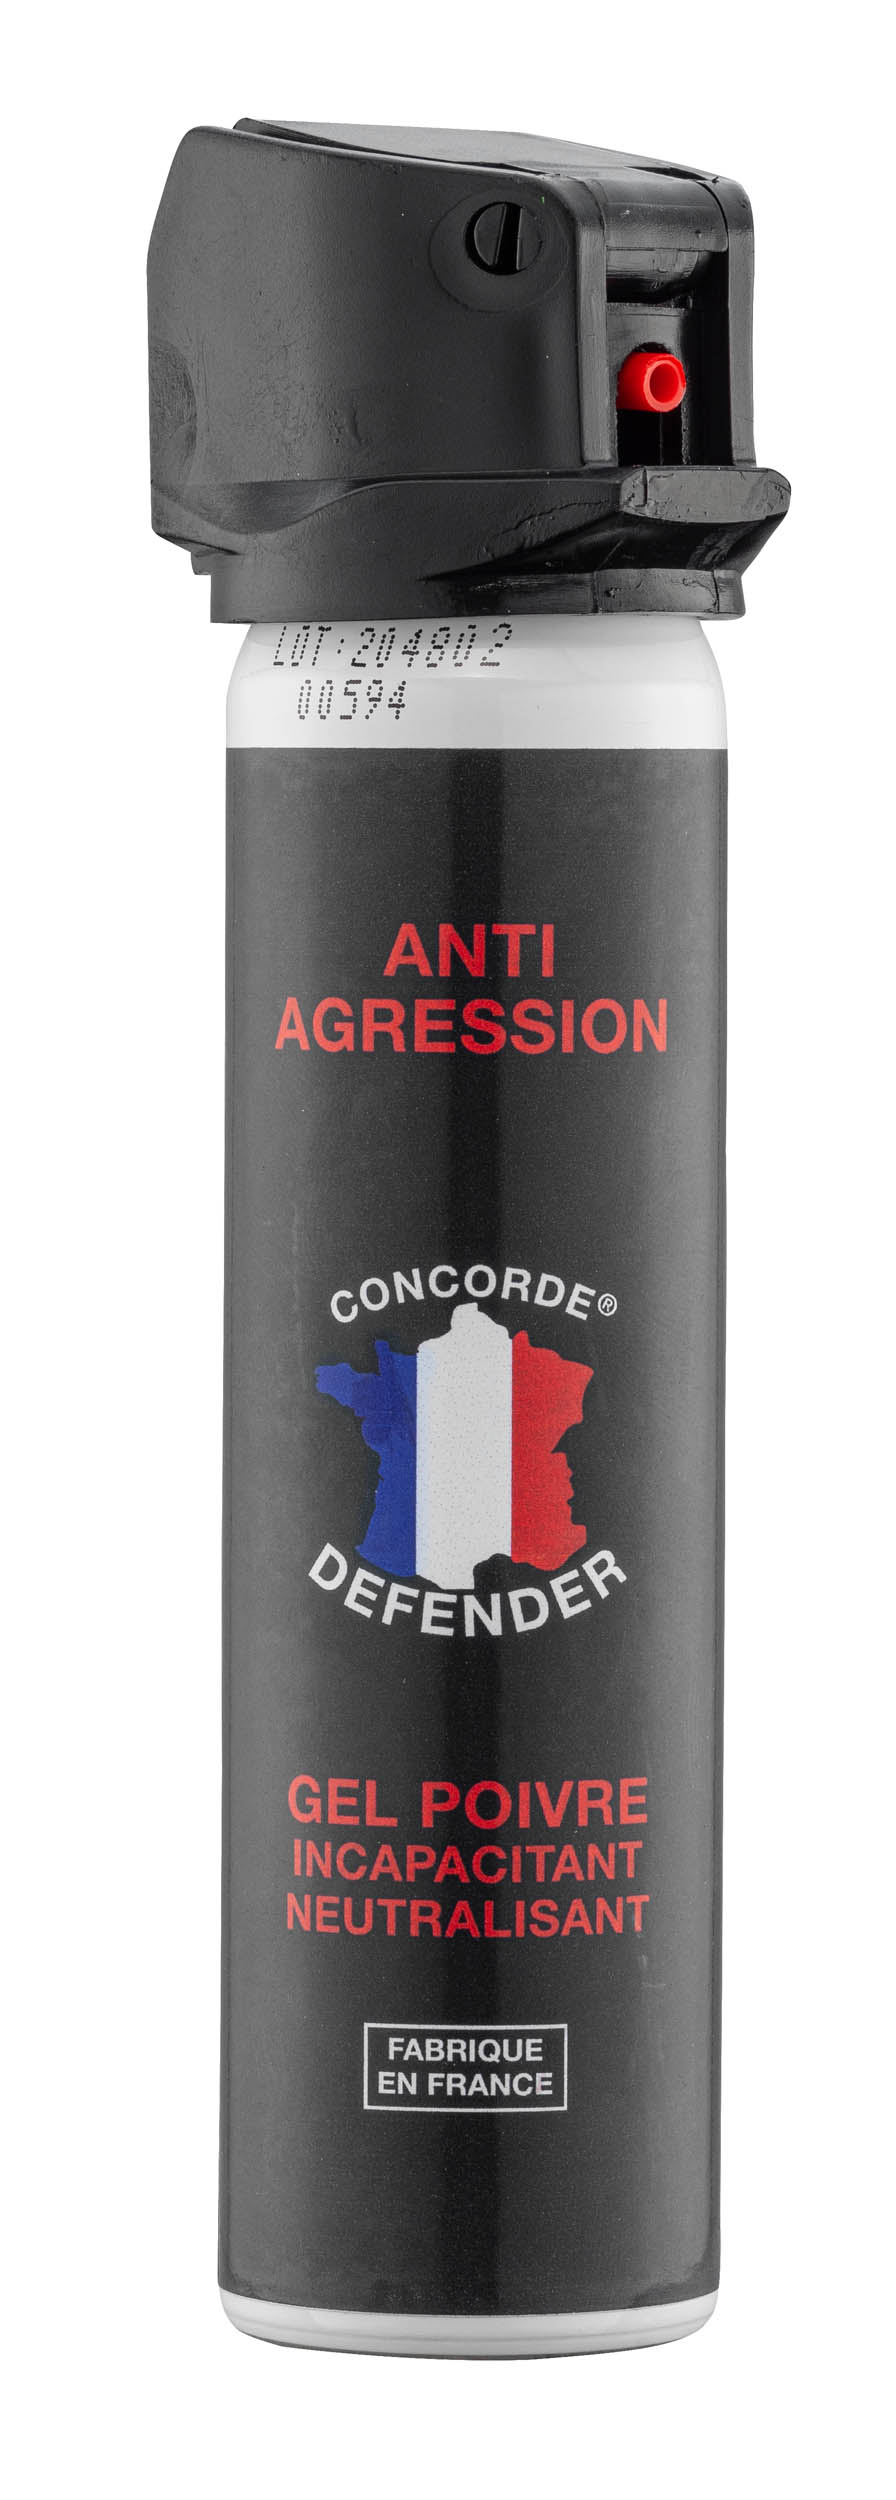 LOT de 4 Bombes Anti-Agression GEL POIVRE et GAZ , CONCORDE